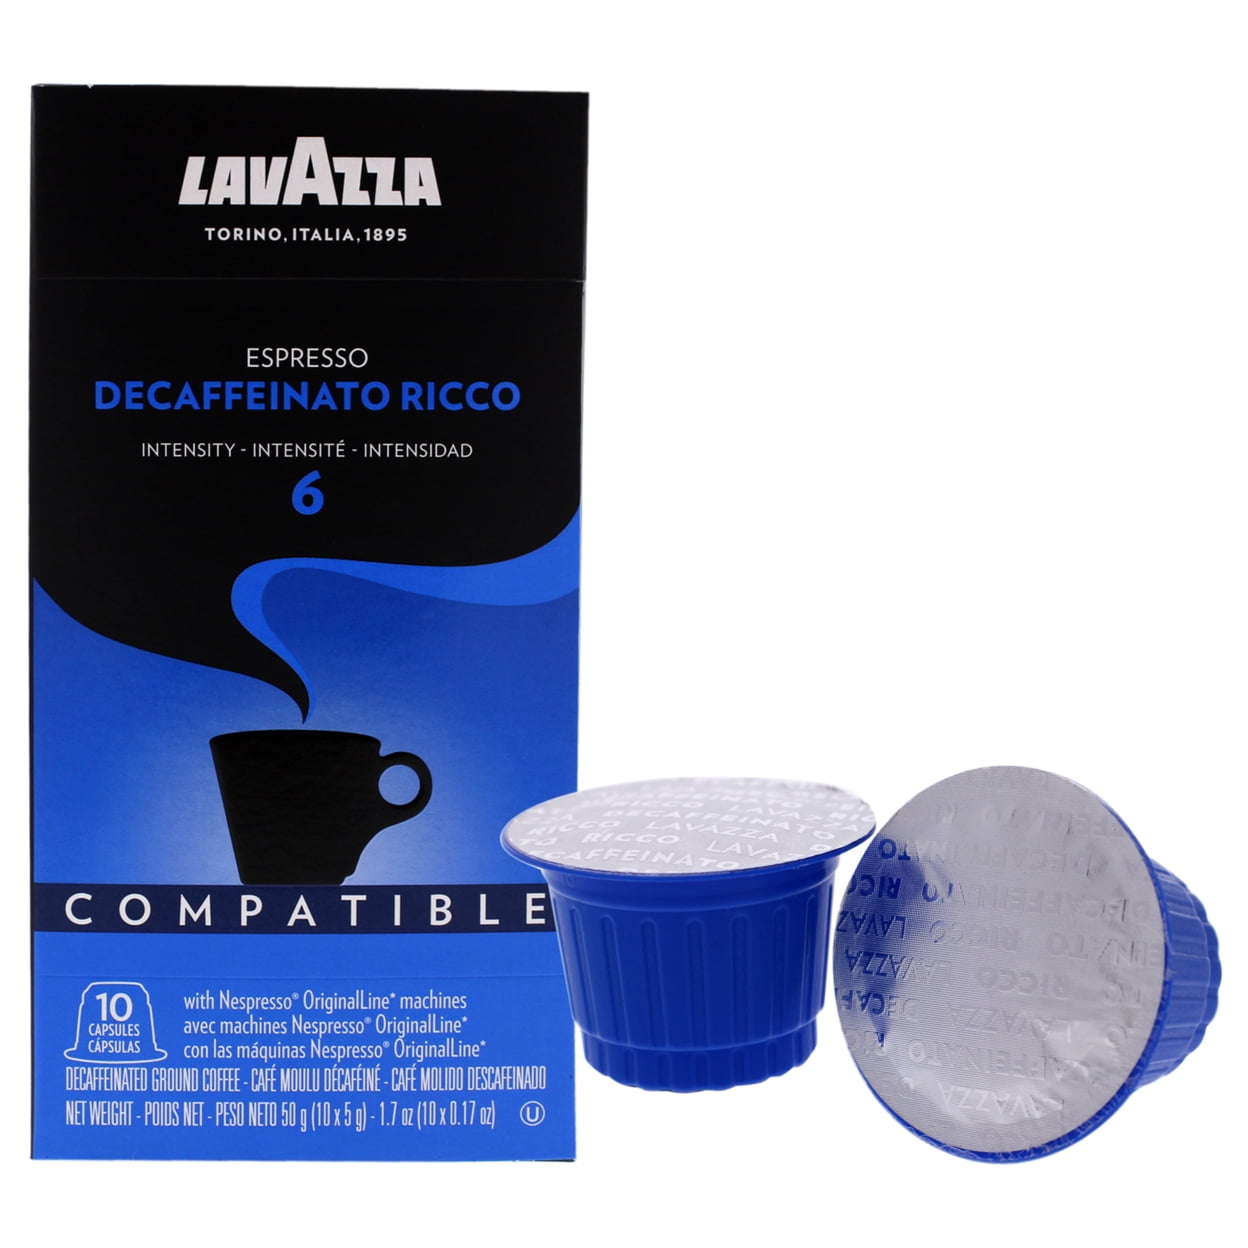 Lavazza Decaffeinato Ricco Espresso Nespresso Coffee Capsules, Dark Roast  (10 Count)